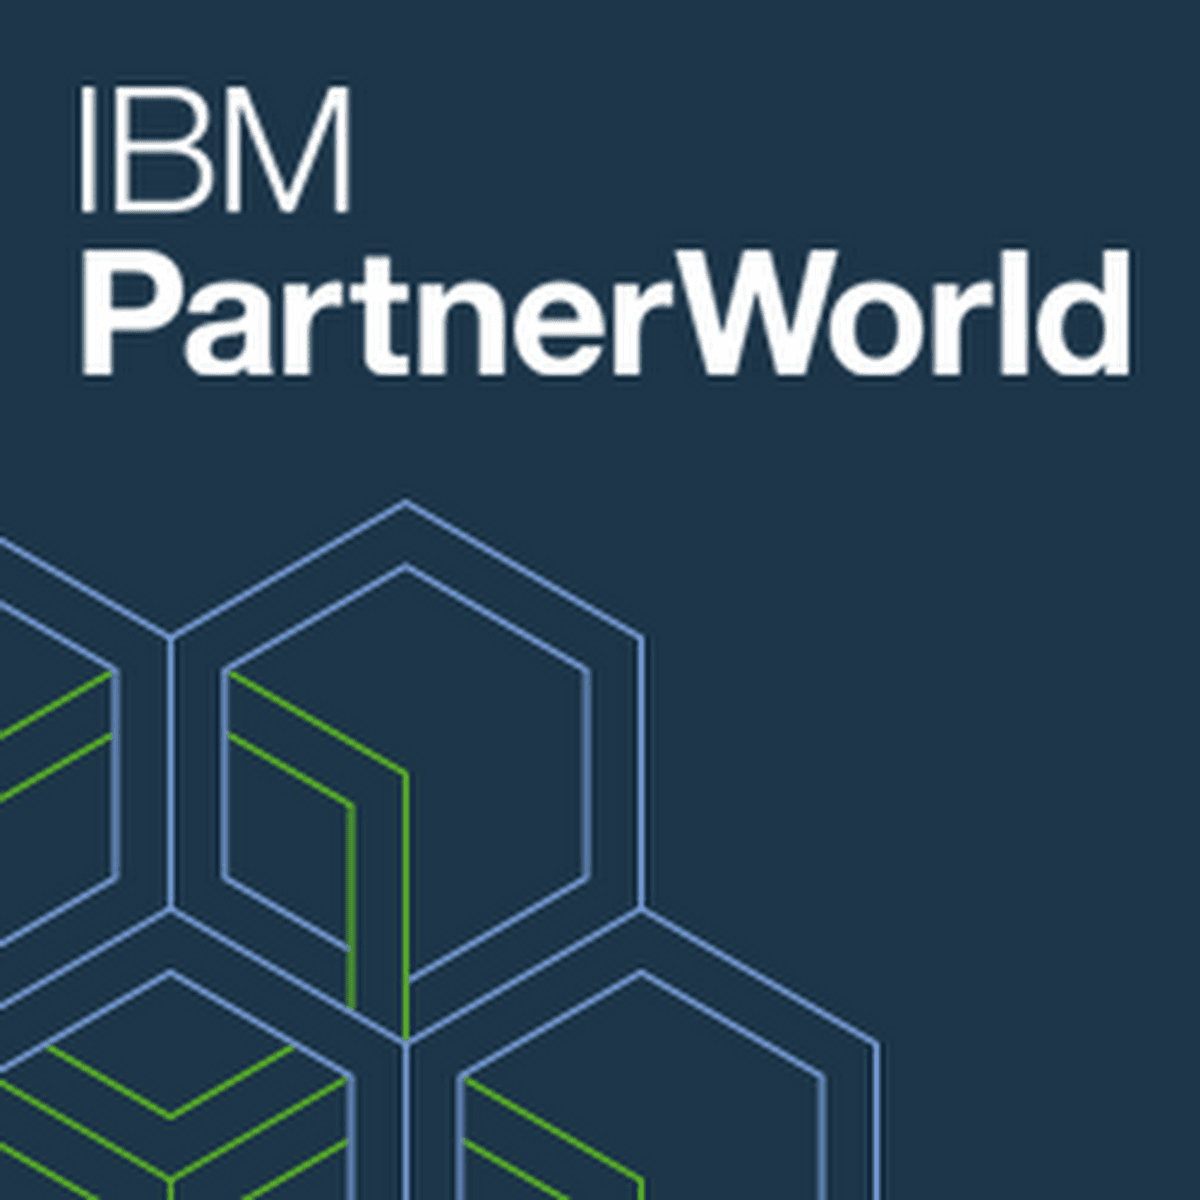 IBM PartnerWorld wordt gebaseerd op drie pijlers Increase, Maximize en Strengthen image